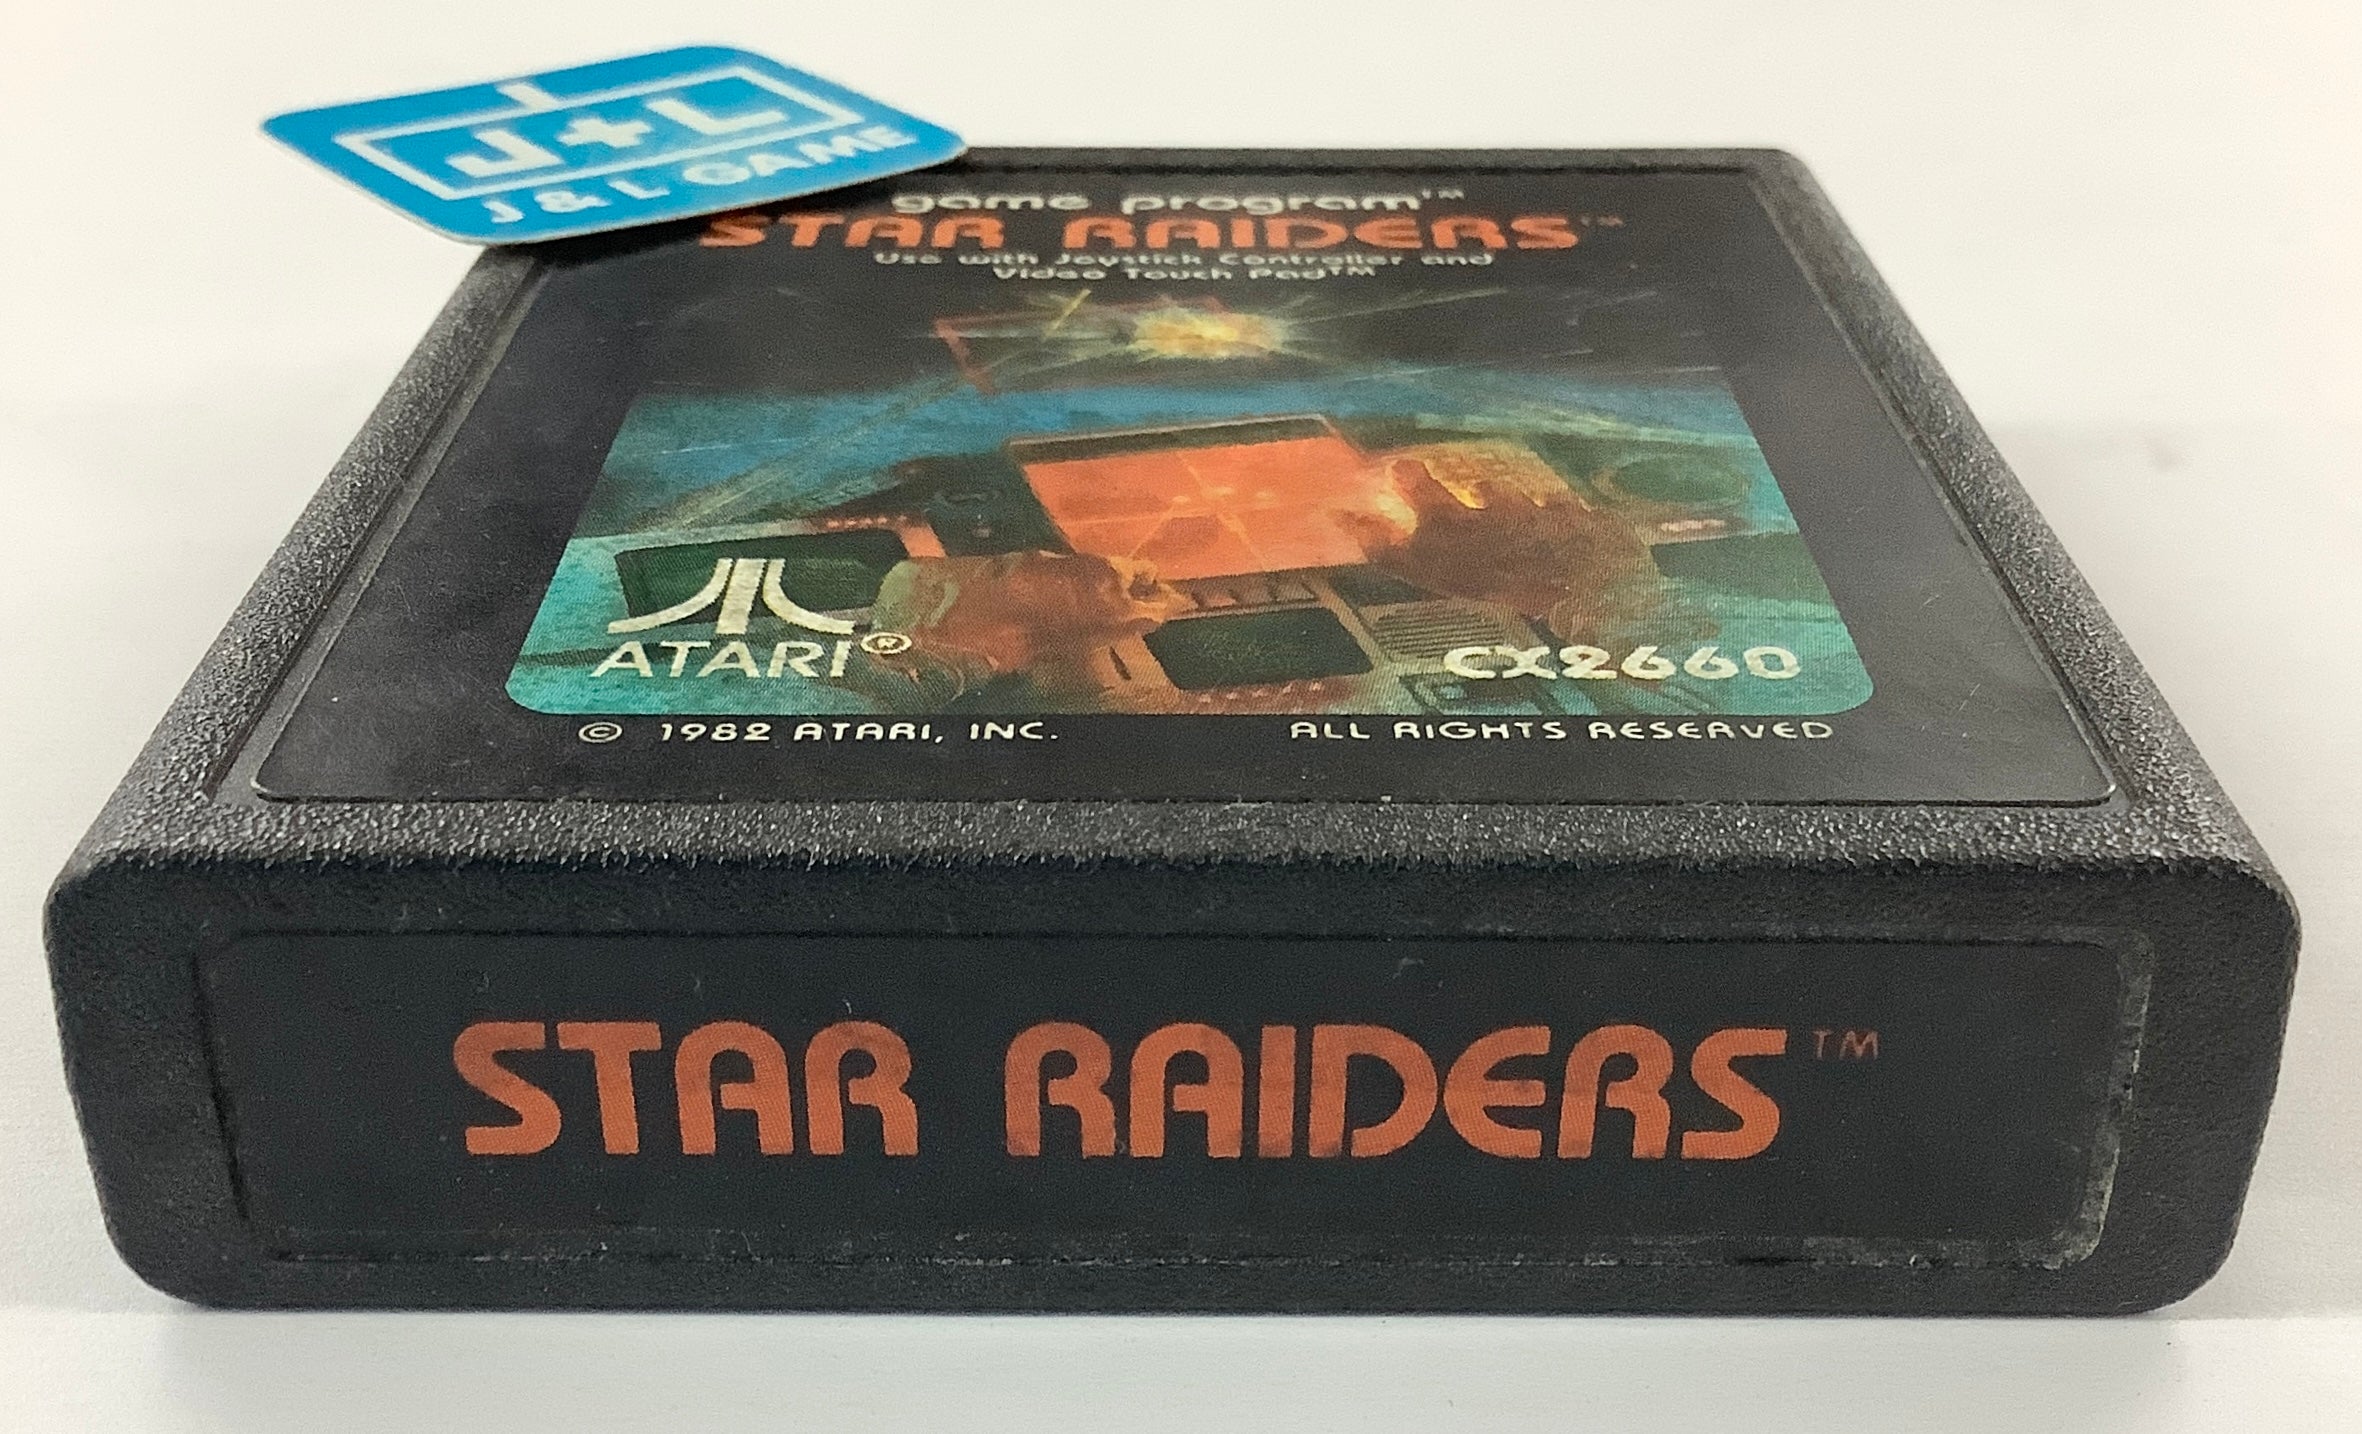 Star Raiders - Atari 2600 [Pre-Owned] Video Games Atari Inc.   